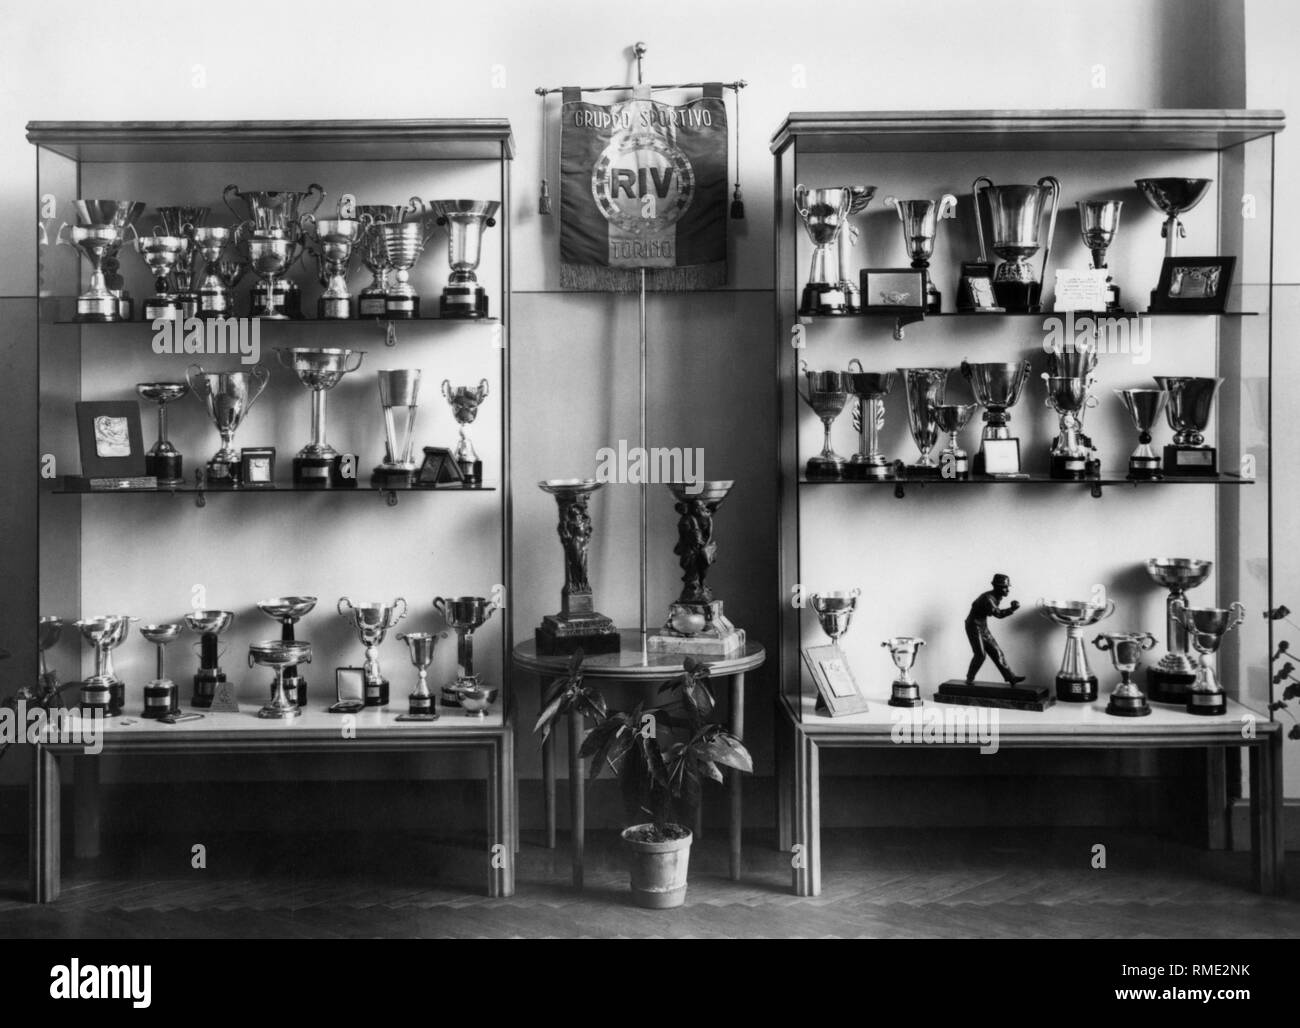 Sport Club riv de Turín, Piamonte, Italia 1940-50 Foto de stock